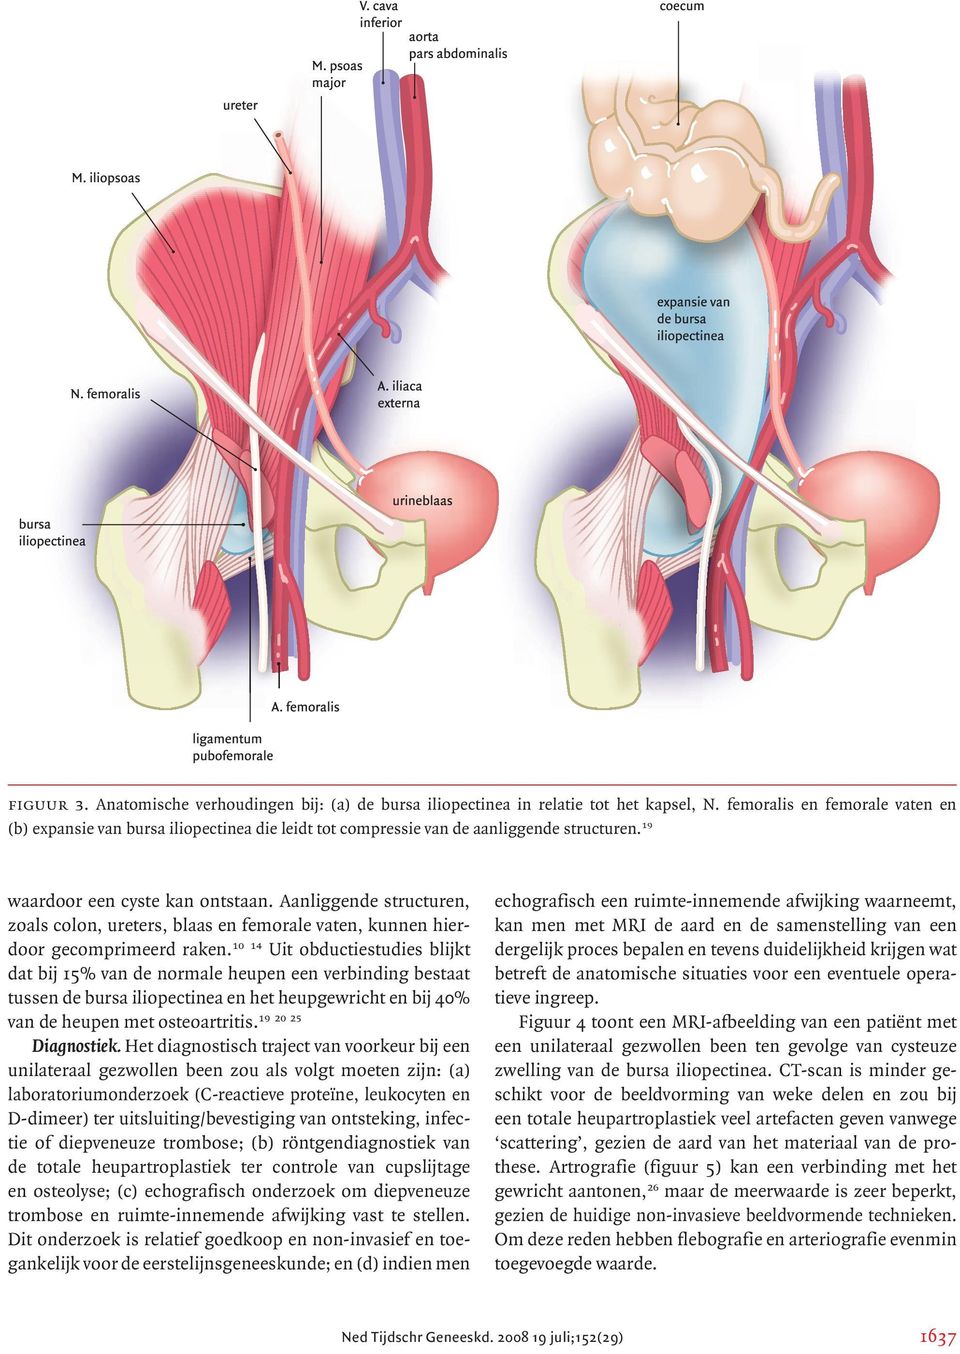 Aanliggende structuren, zoals colon, ureters, blaas en femorale vaten, kunnen hierdoor gecomprimeerd raken.